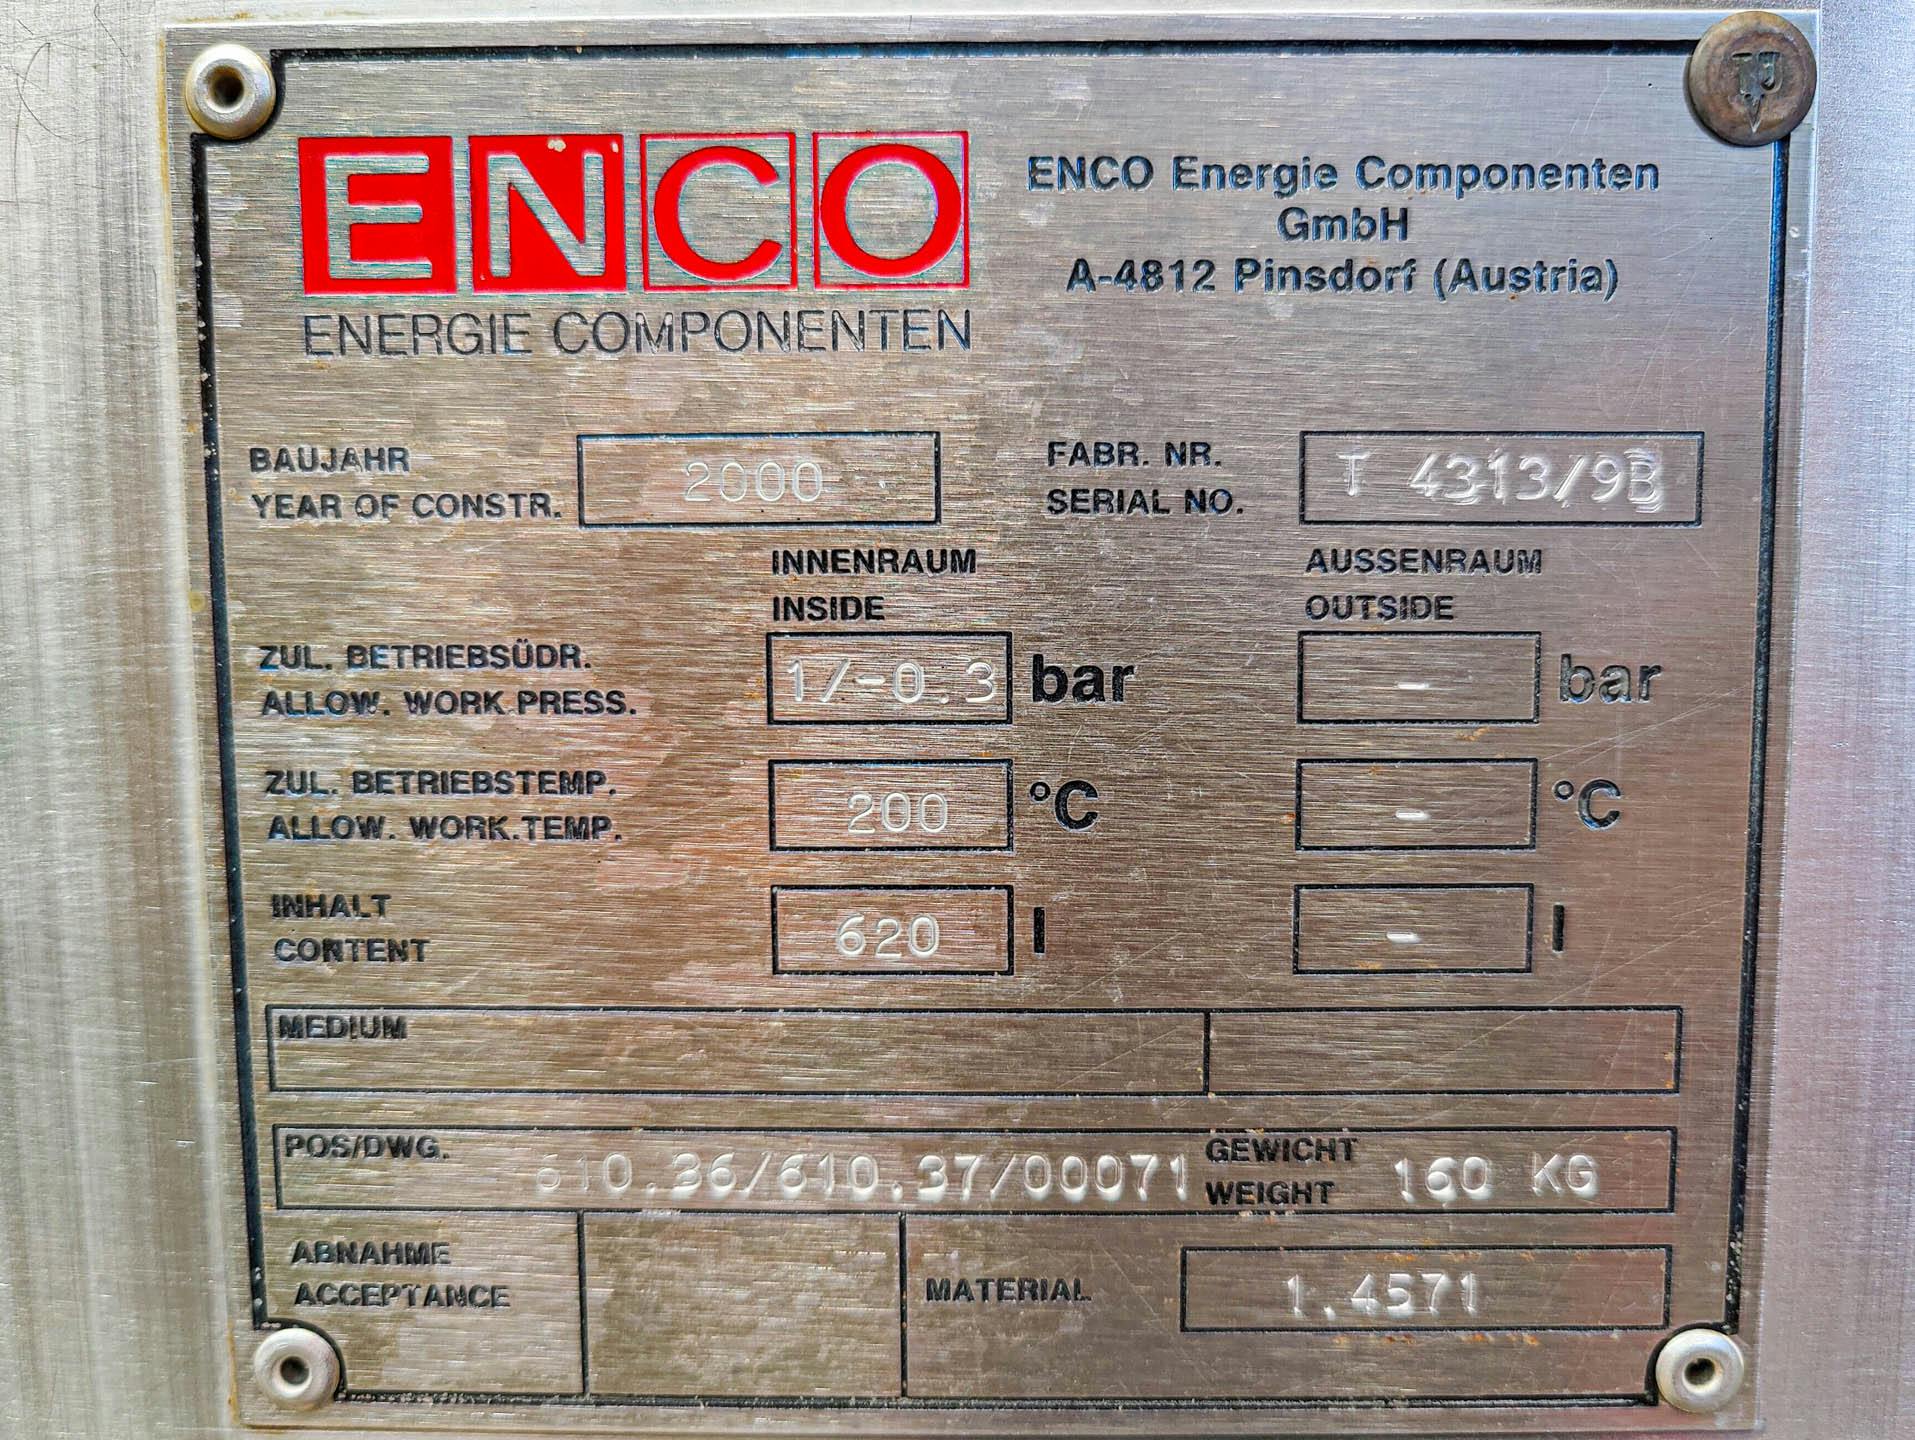 Enco 620 Ltr. - Drukketel - image 7